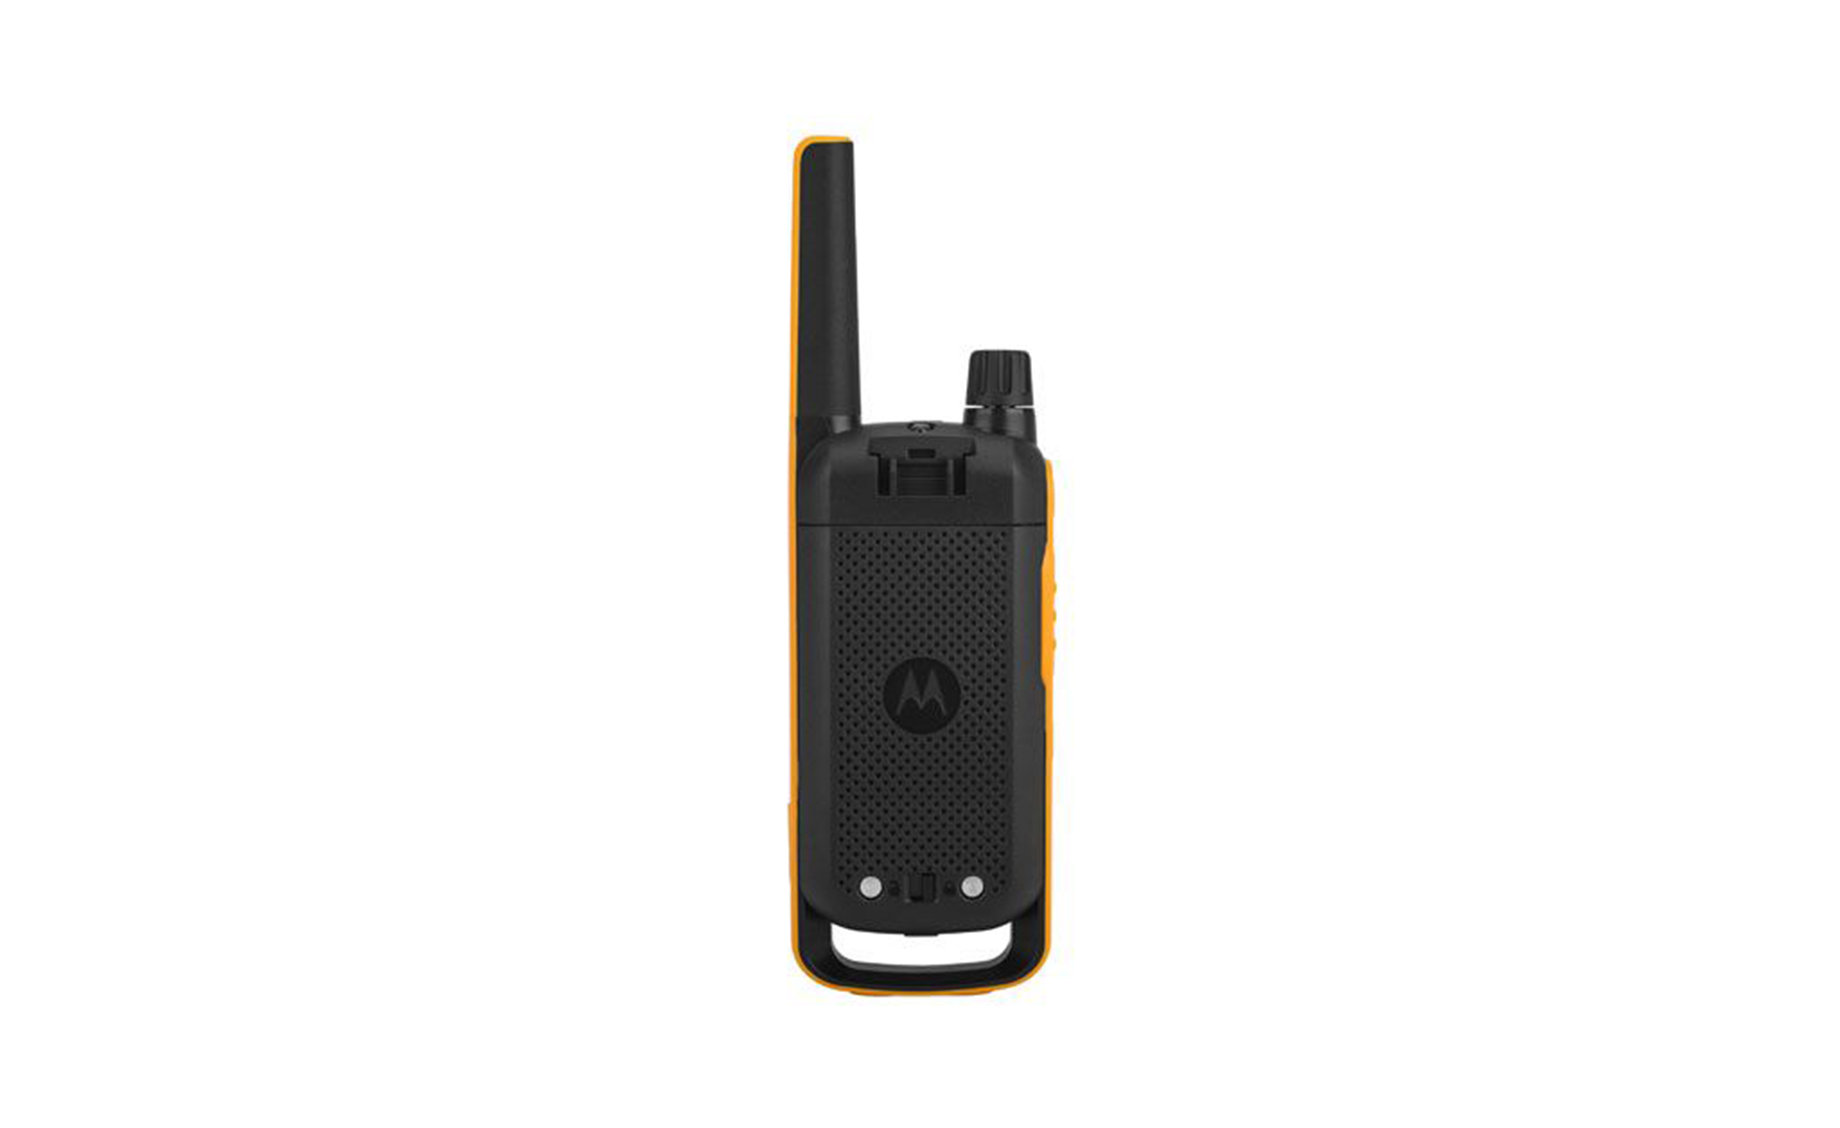 Motorola TLKR-T82 Extreme walky talky